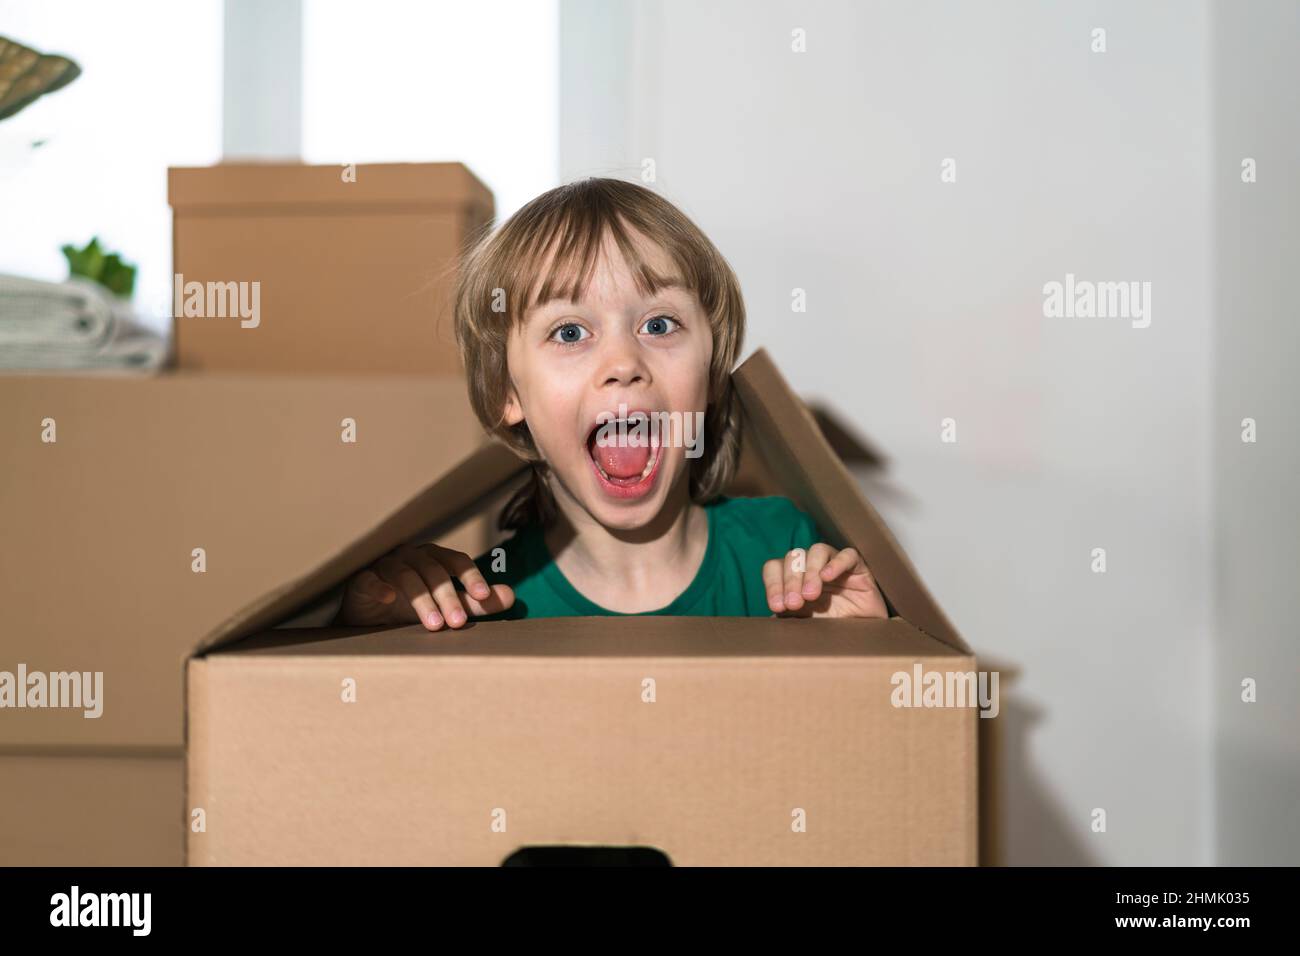 Il ragazzino eccitato che salta all'interno di un'enorme scatola di cartone. Sta giocando e guardando fuori da una scatola. Il capretto è felice di muoversi in una nuova sede. Foto Stock